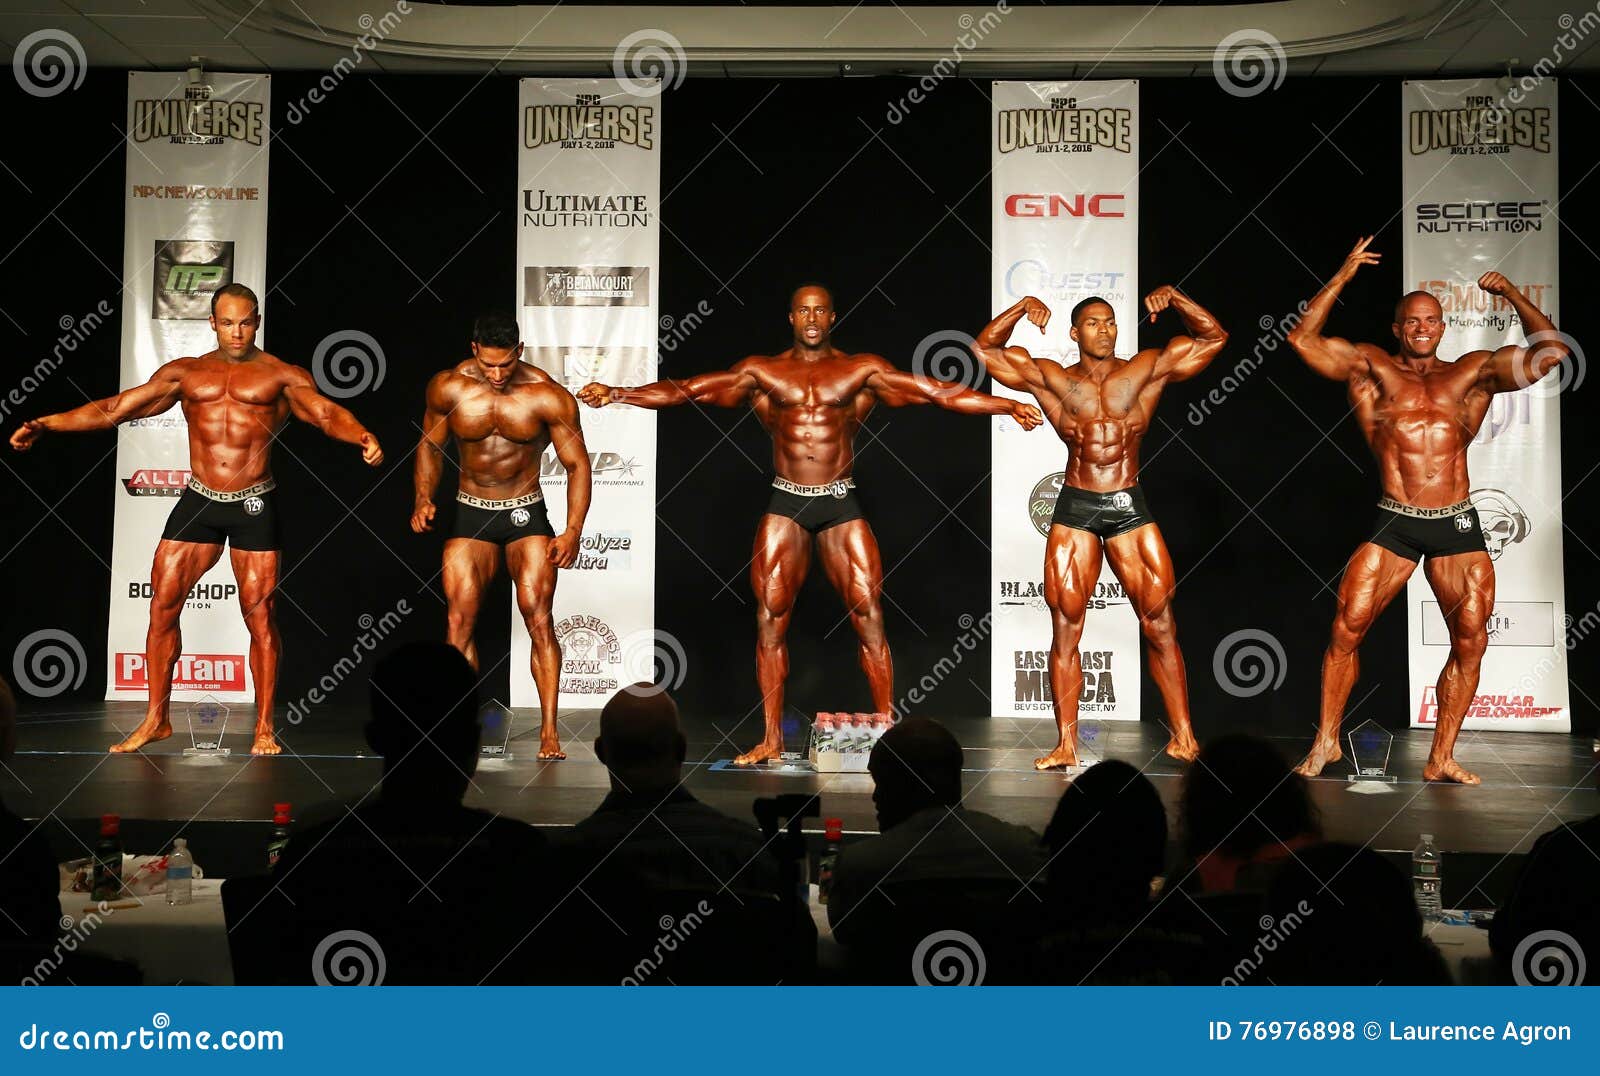 Men's Classic Physique | Body building men, Physique, Bodybuilding